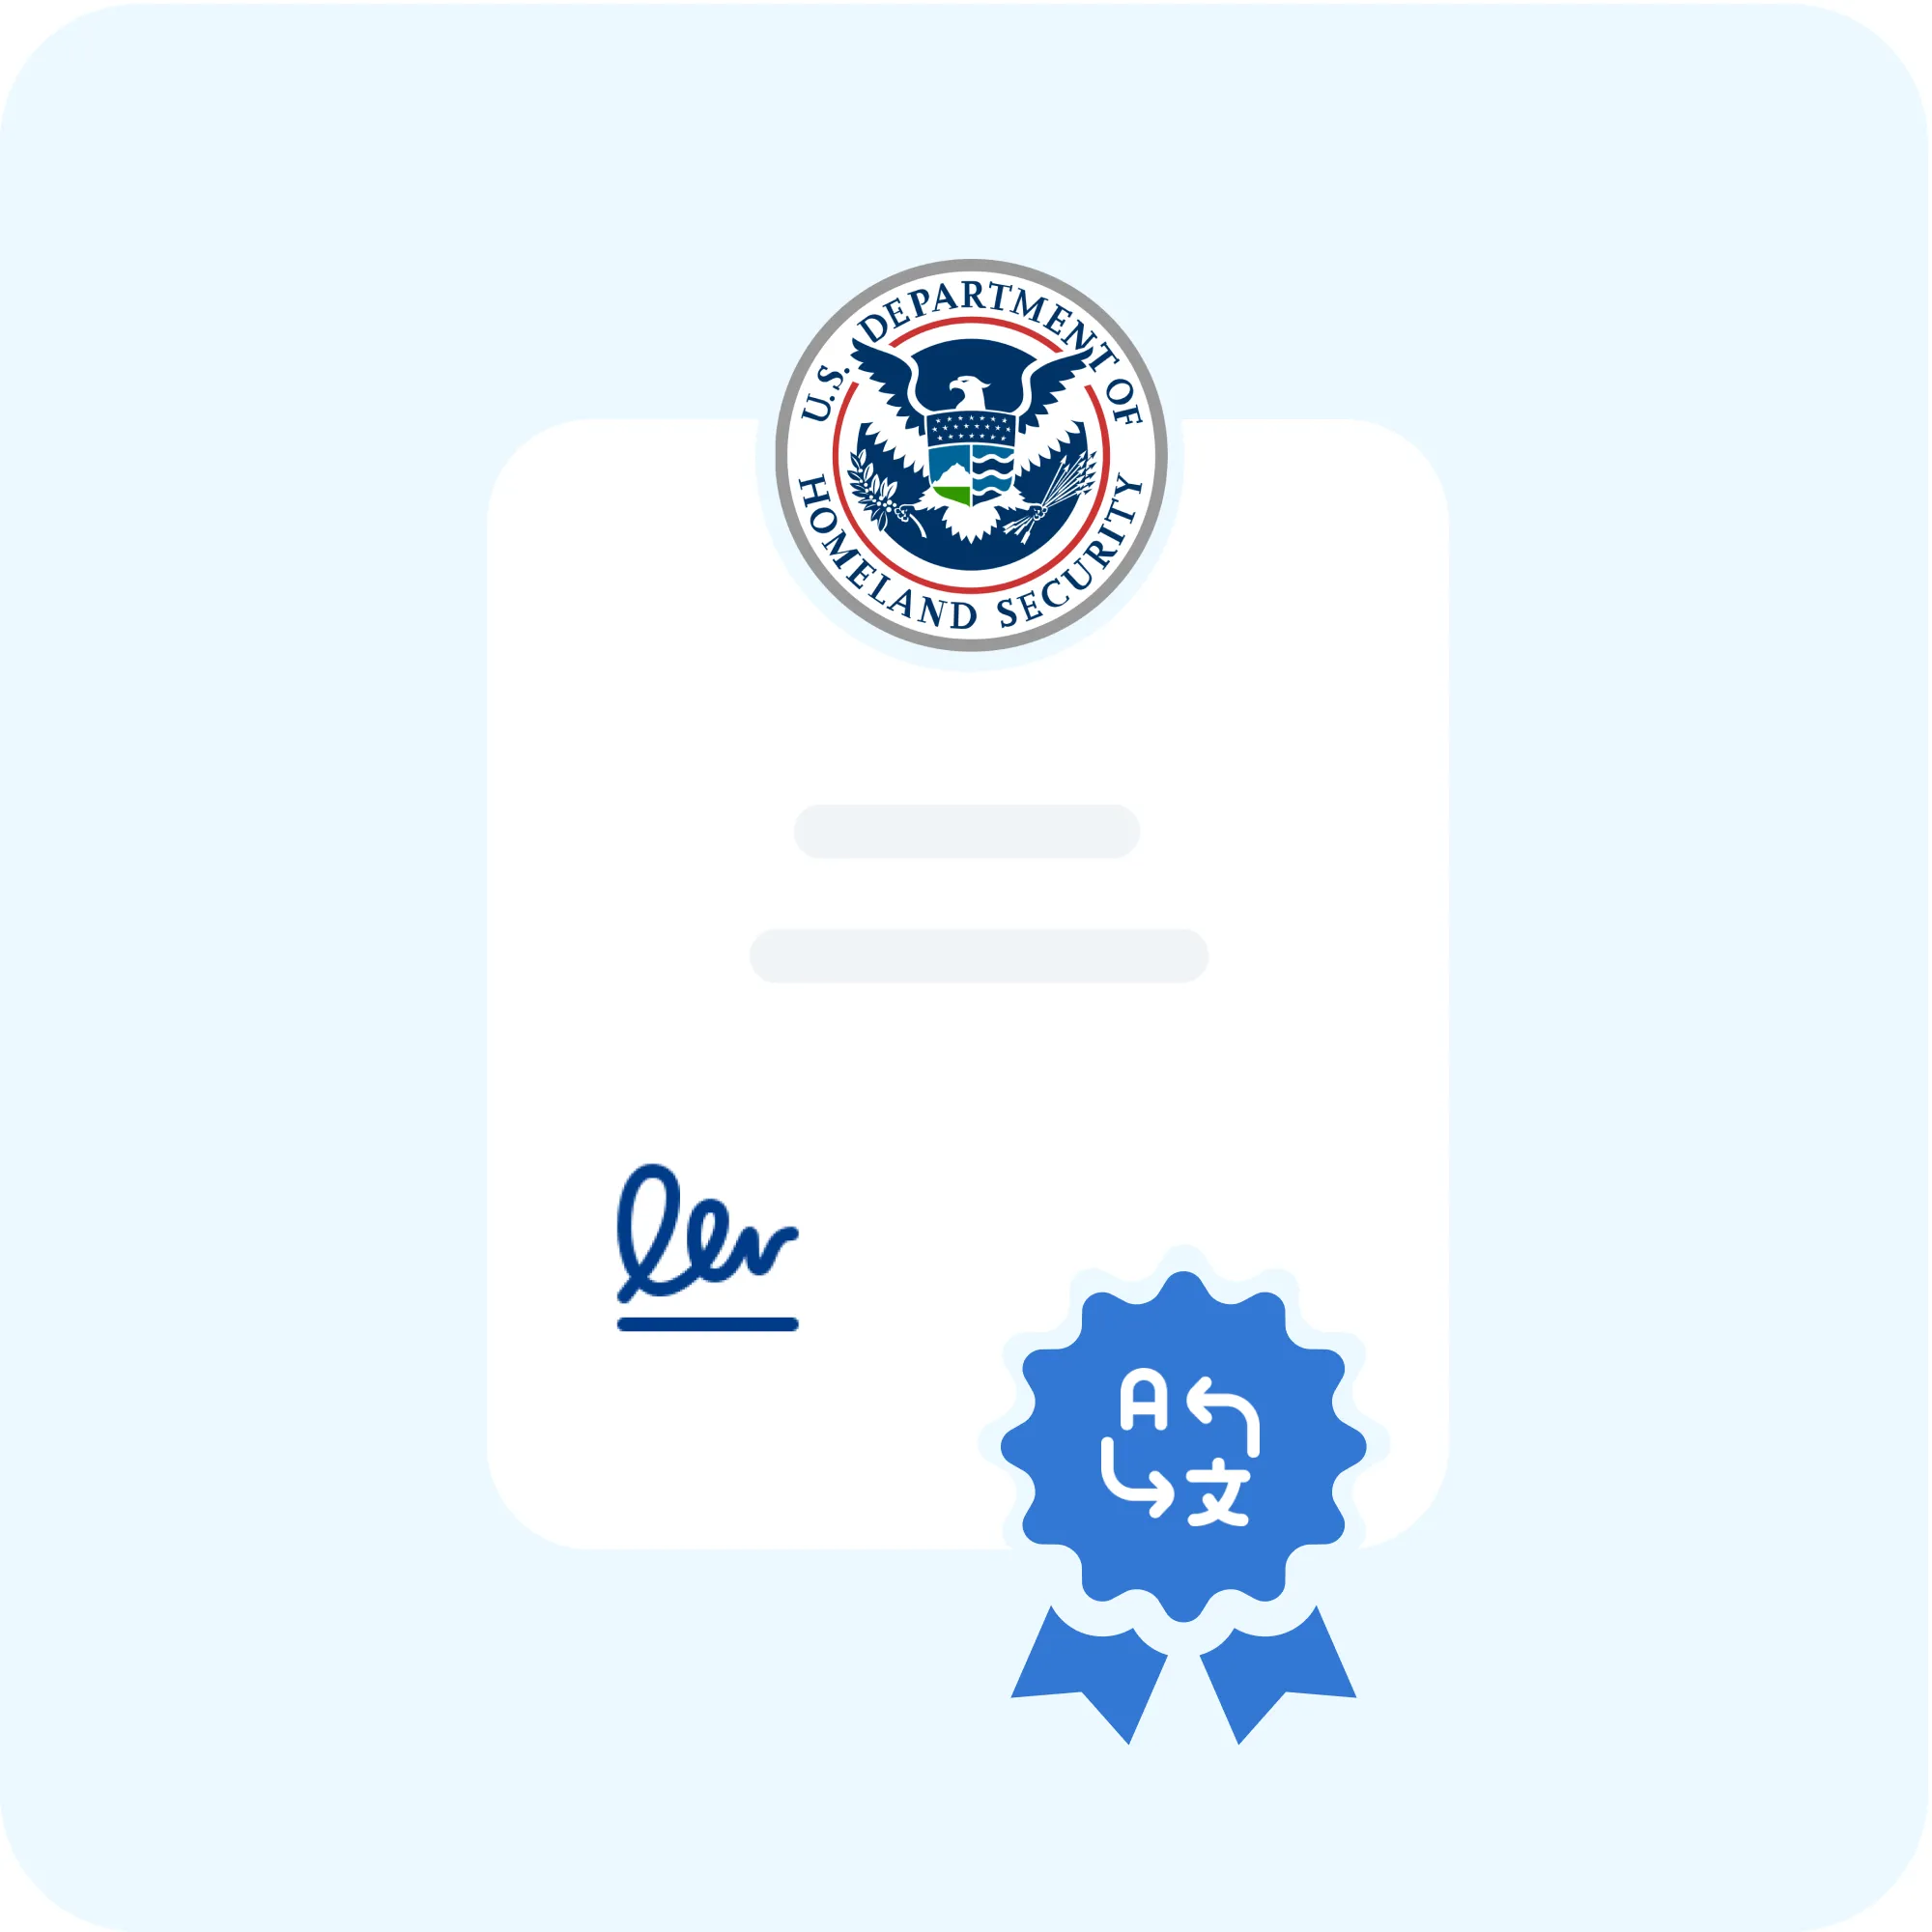 Imigração para os EUA: tipos de vistos, documentos, tradução